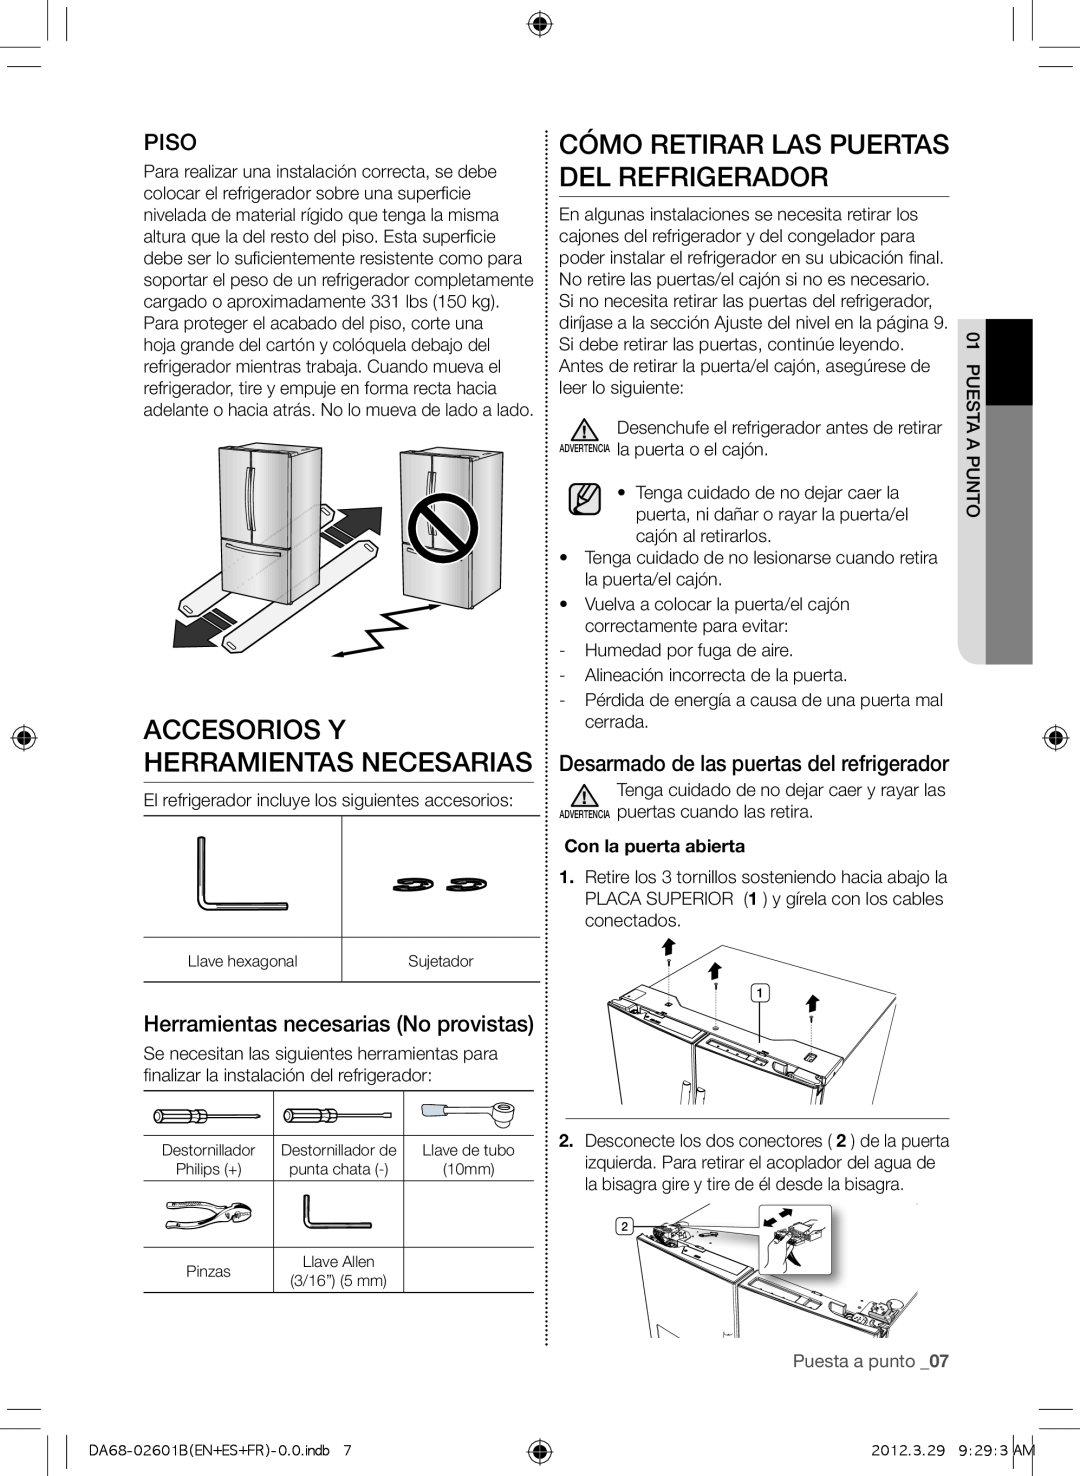 Samsung RF261BEAEBC, GI6FARXXQ Accesorios y herramientas necesarias, Cómo retirar las puertas del refrigerador, Piso 